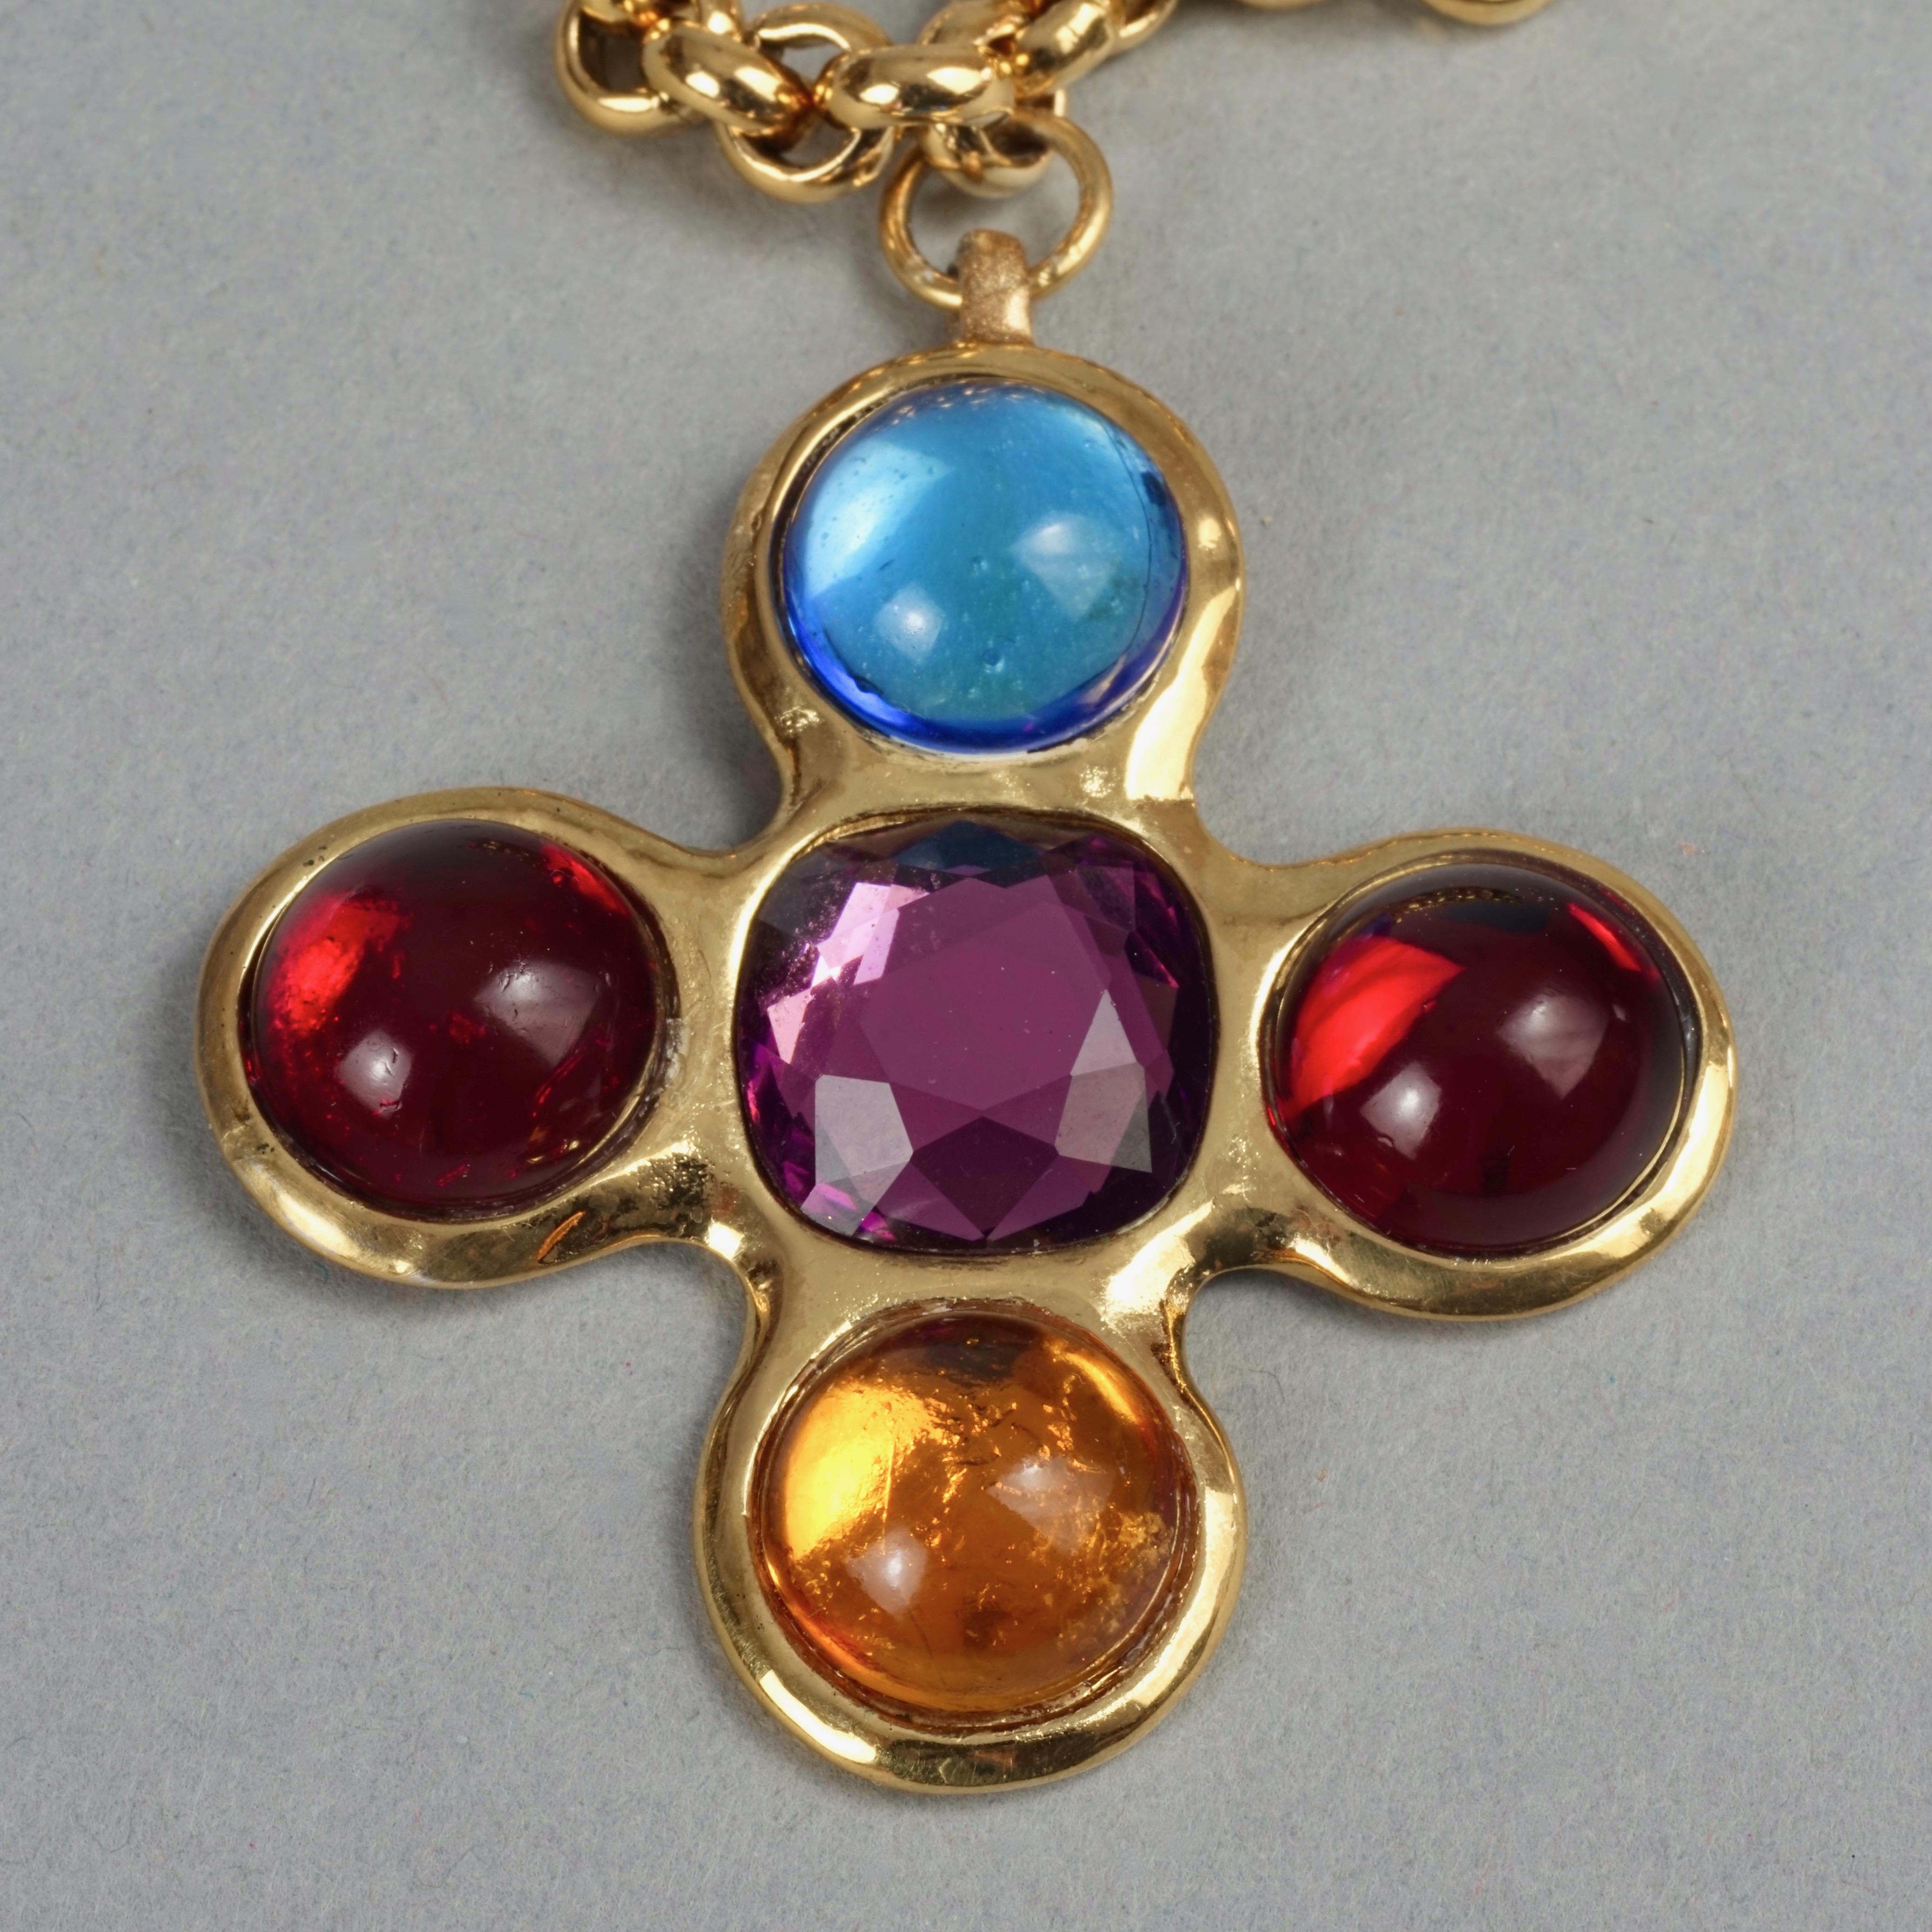 Women's Vintage YVES SAINT LAURENT Ysl Robert Goossens Jewelled Cross Pendant Necklace